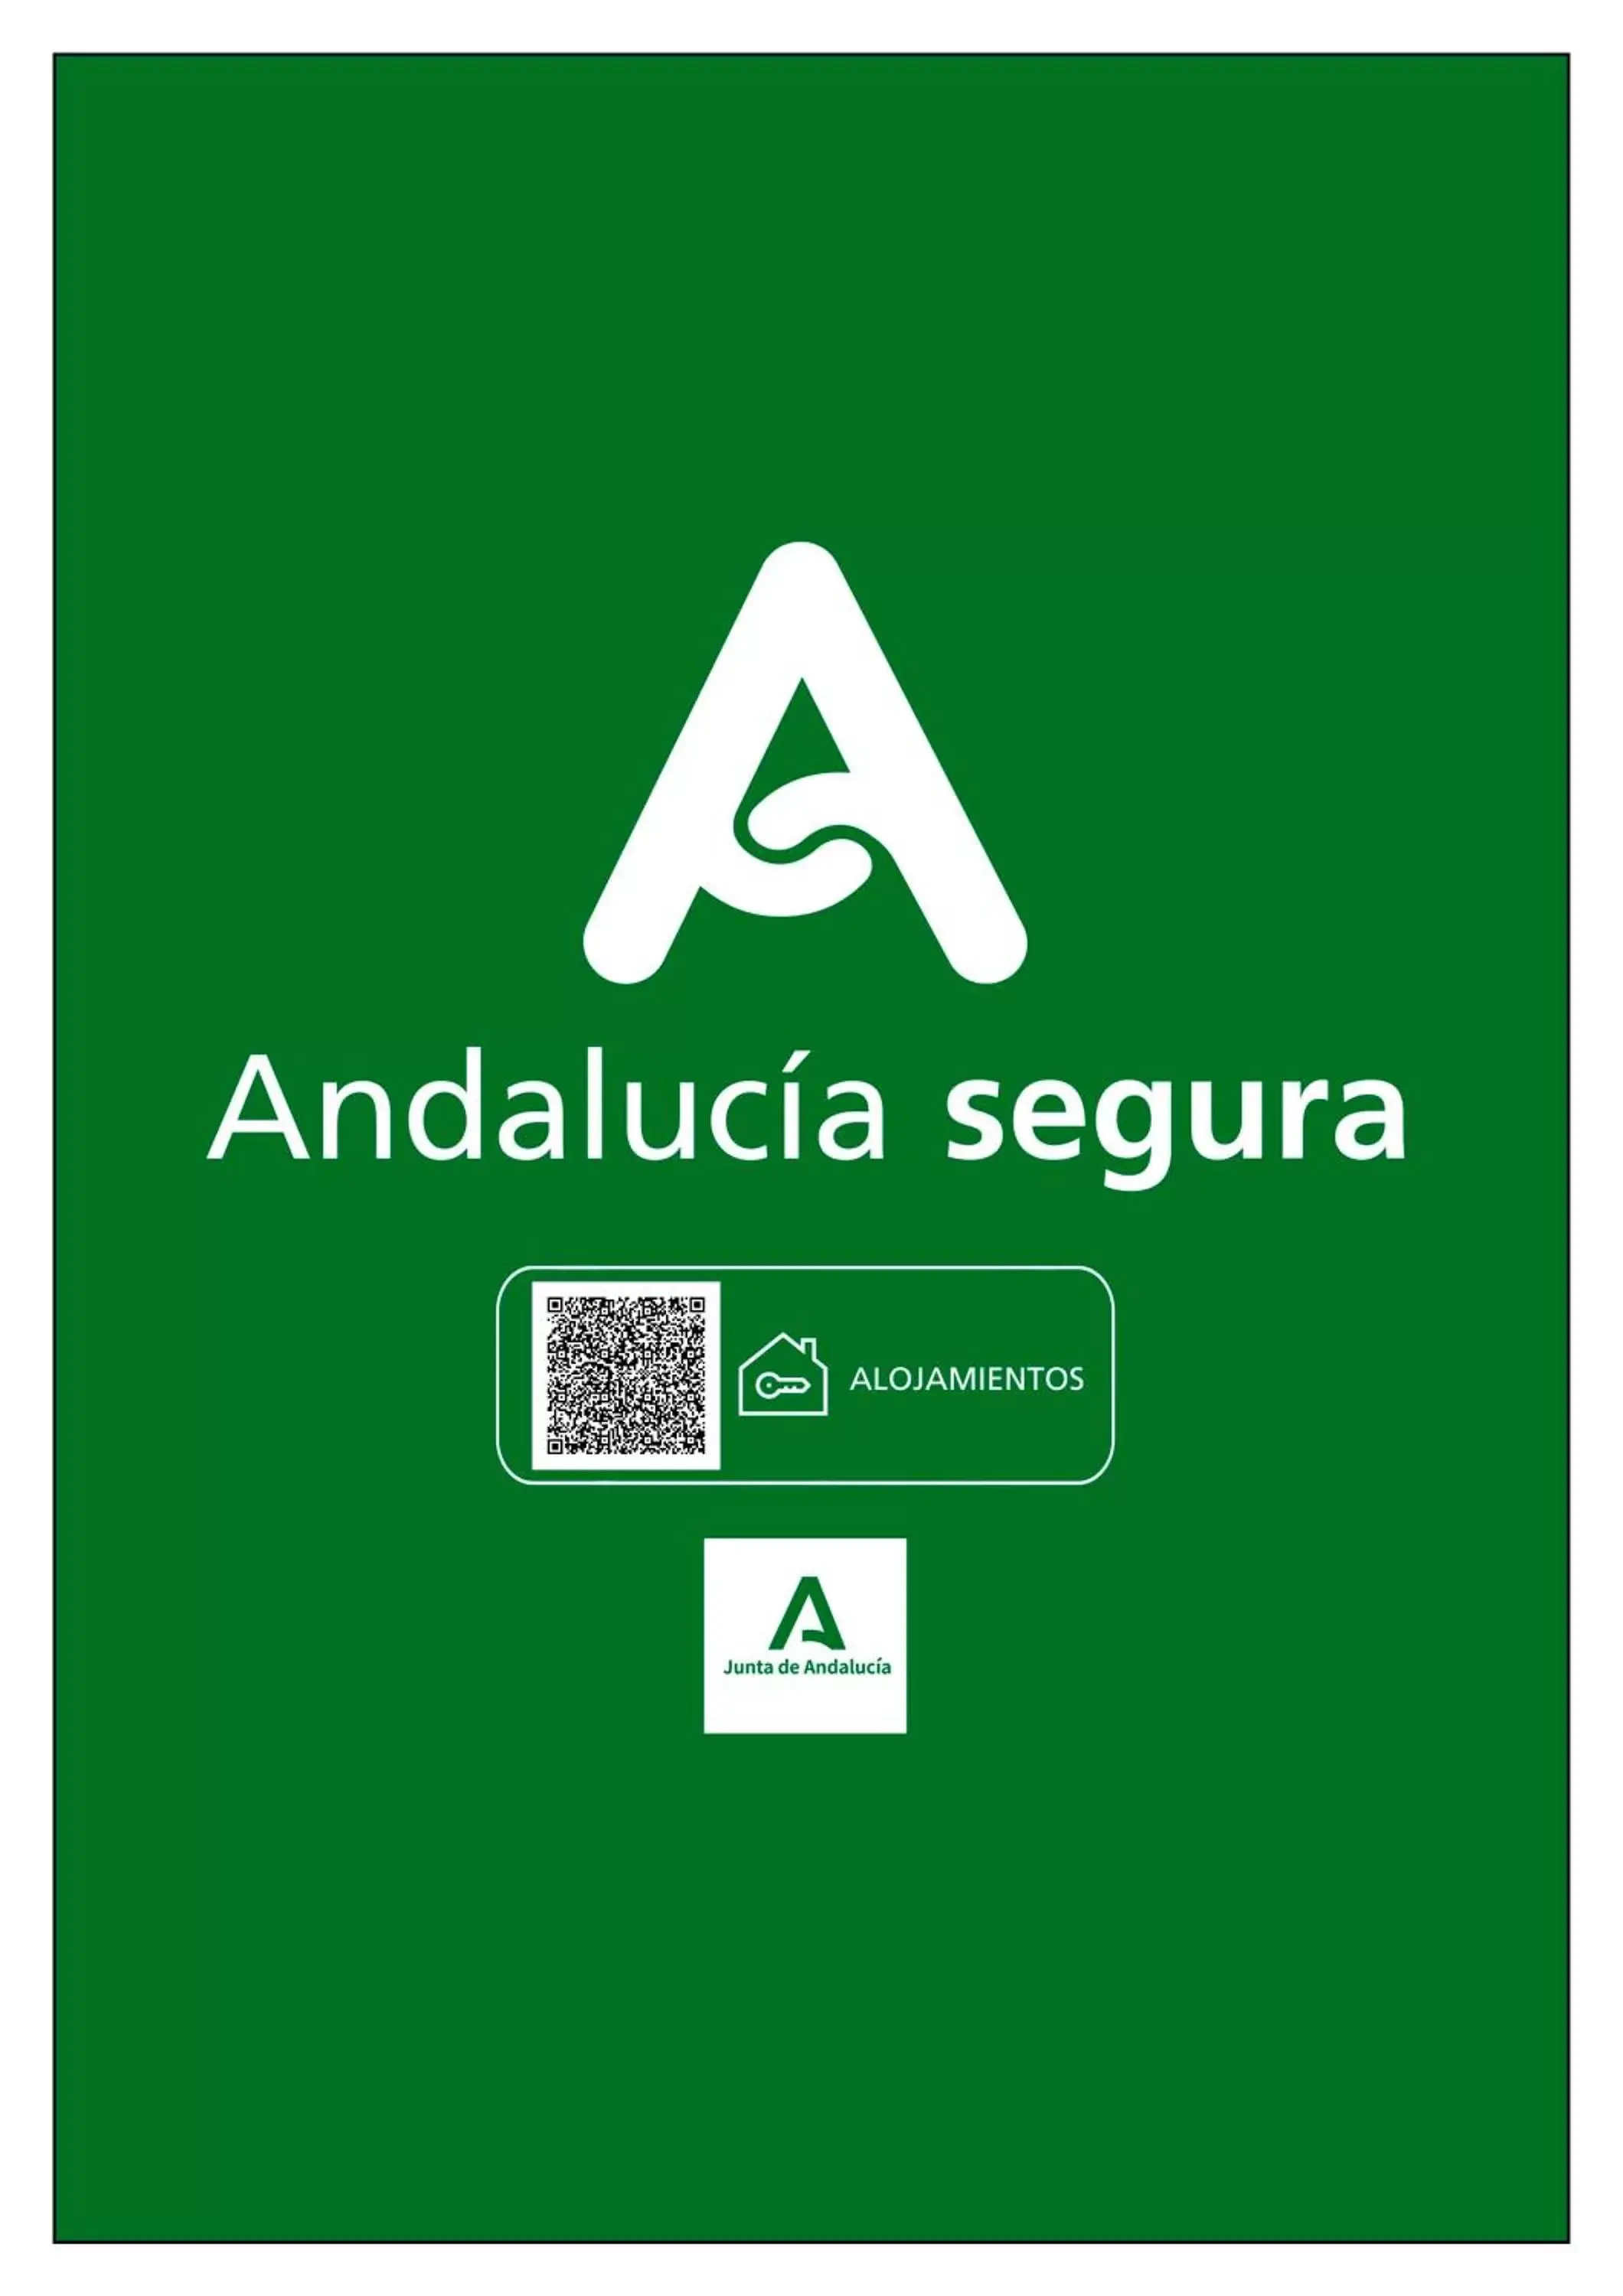 Certificate/Award in Hotel América Sevilla